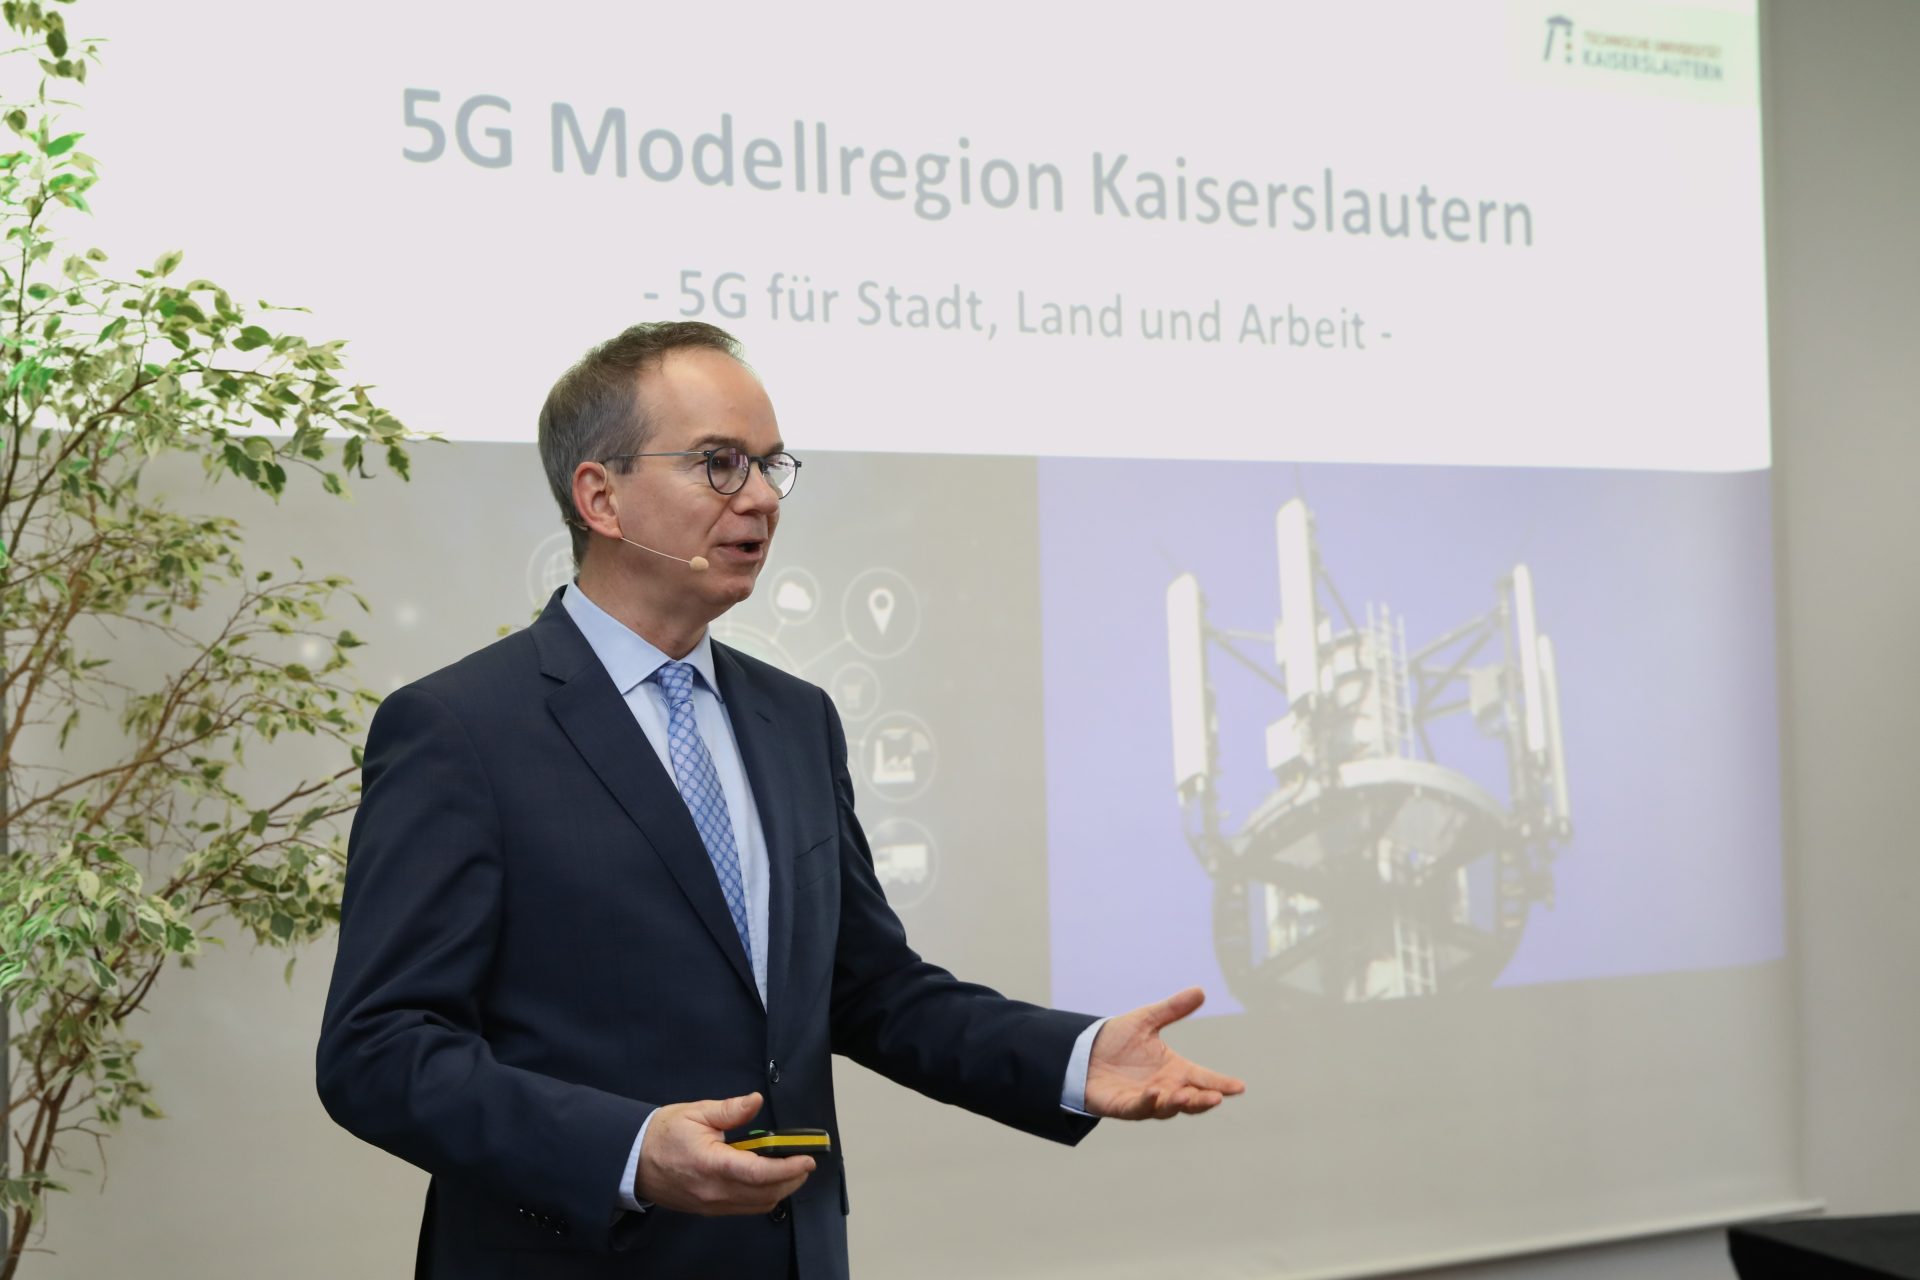 Prof. Dr. Hans D. Schotten spricht über die 5G Modellregion Kaiserslautern